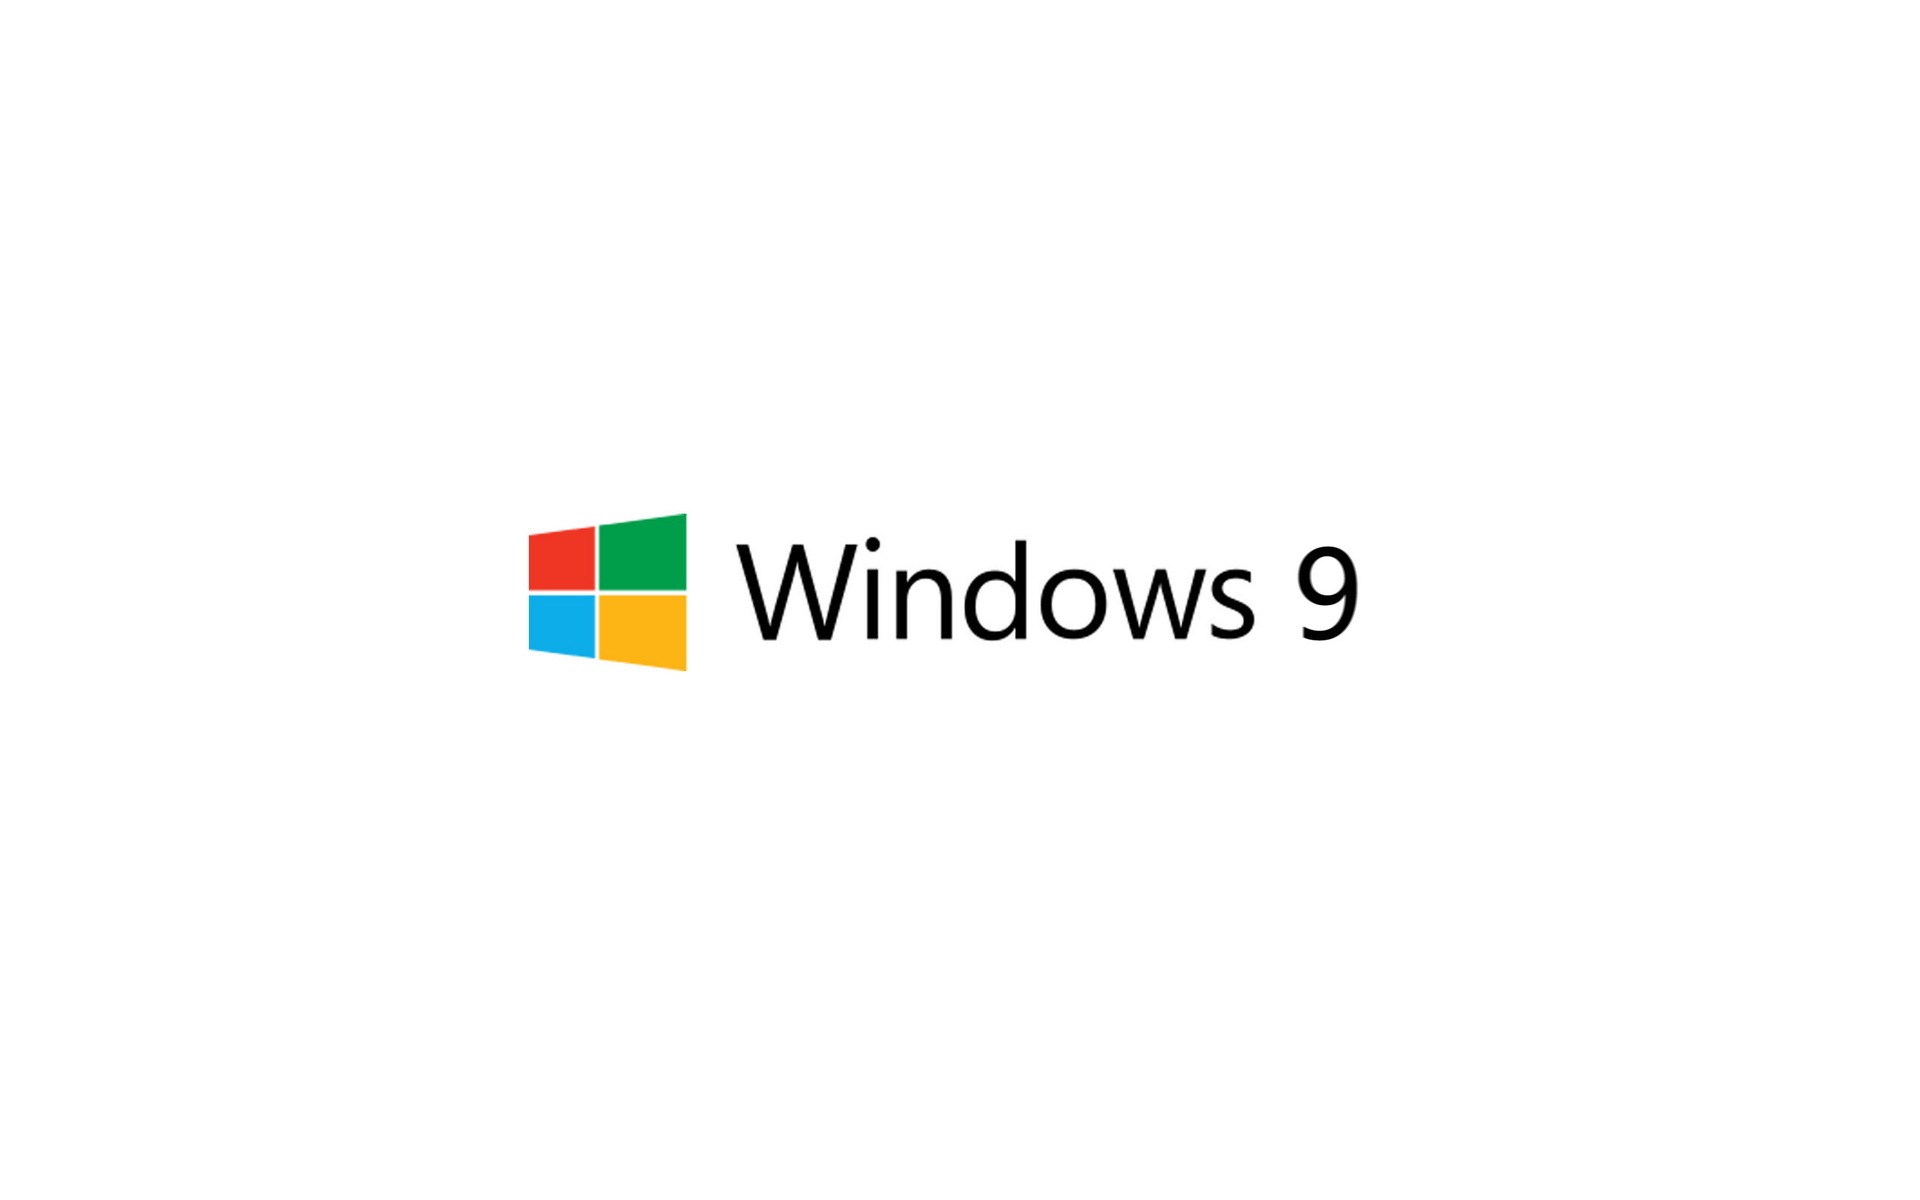 微软 Windows 9 系统主题 高清壁纸7 - 1920x1200